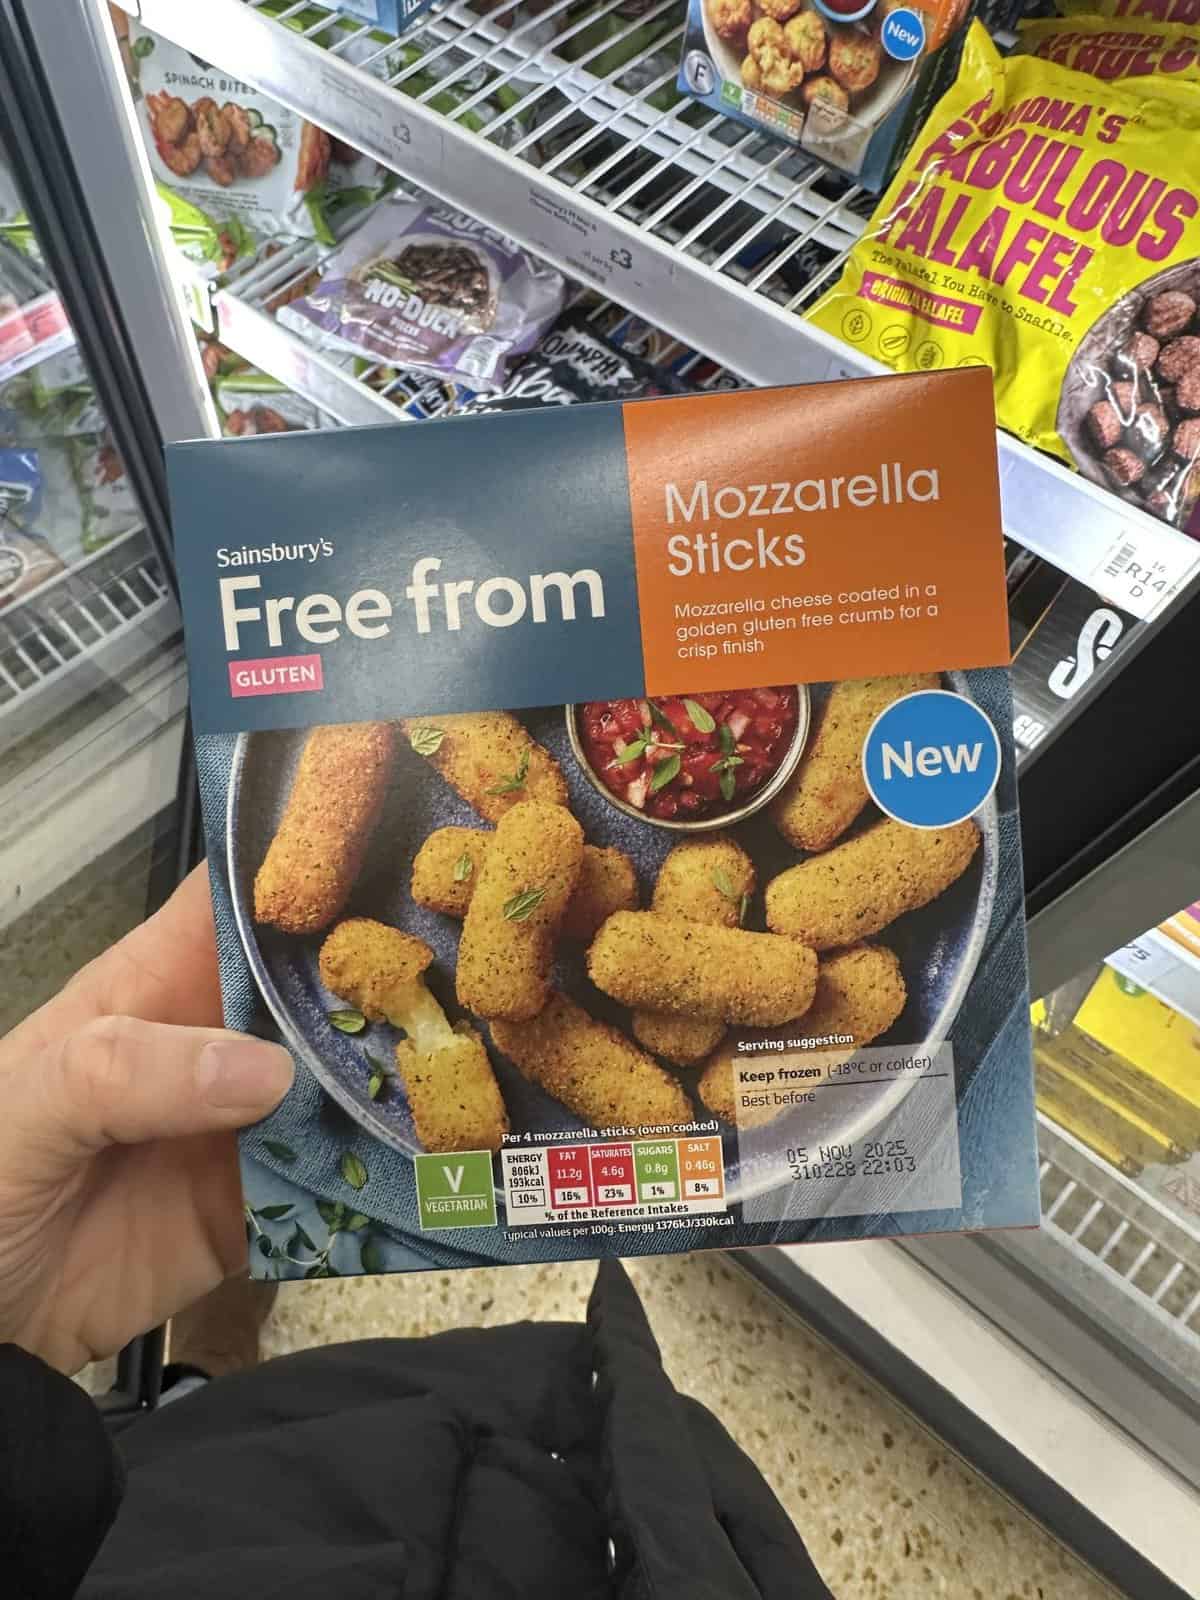 Sainsbury's Gluten Free Mozzarella Sticks